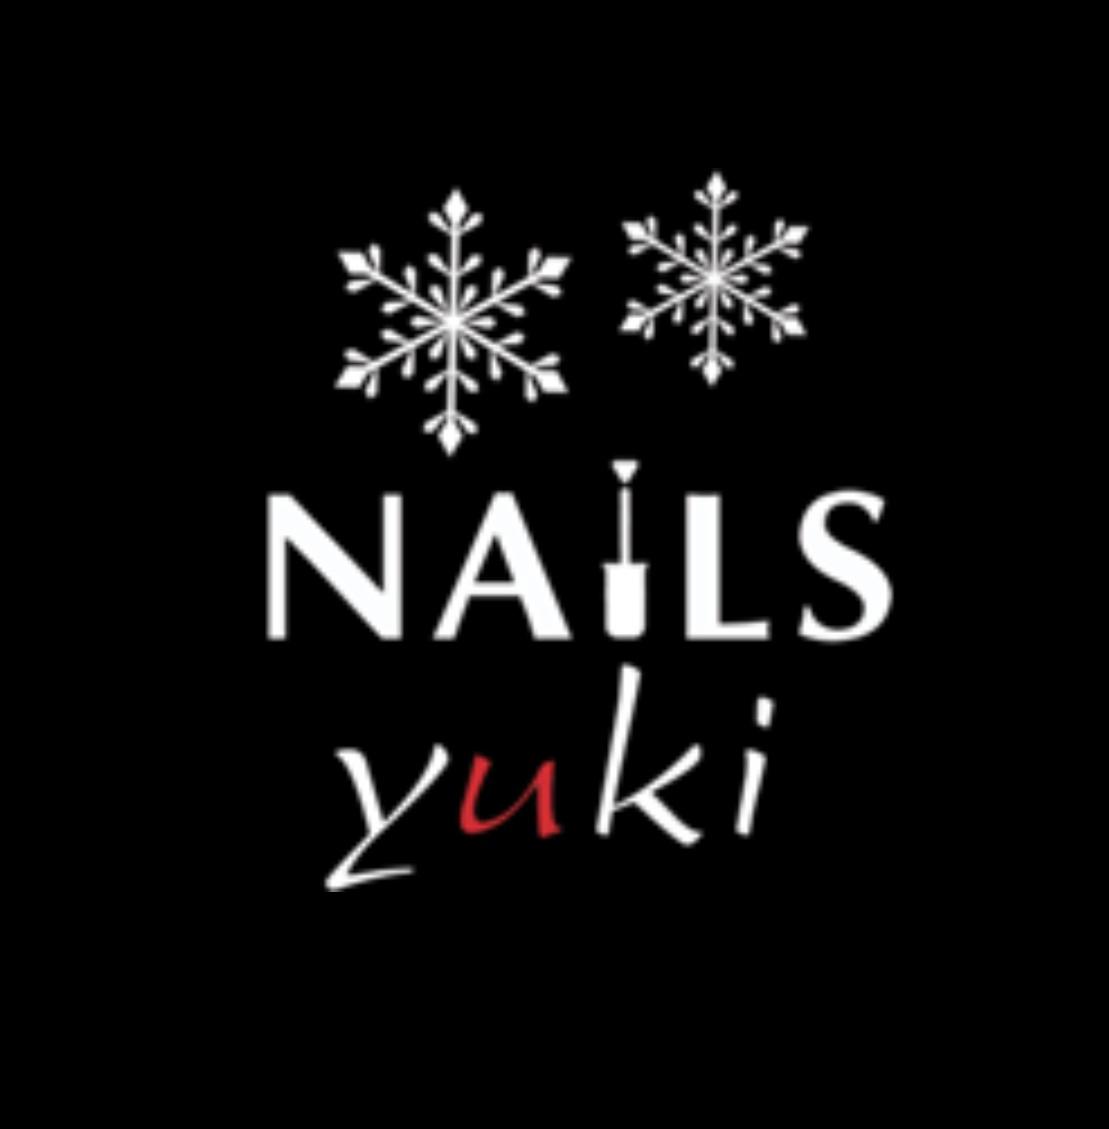 Yuki Nails Paris